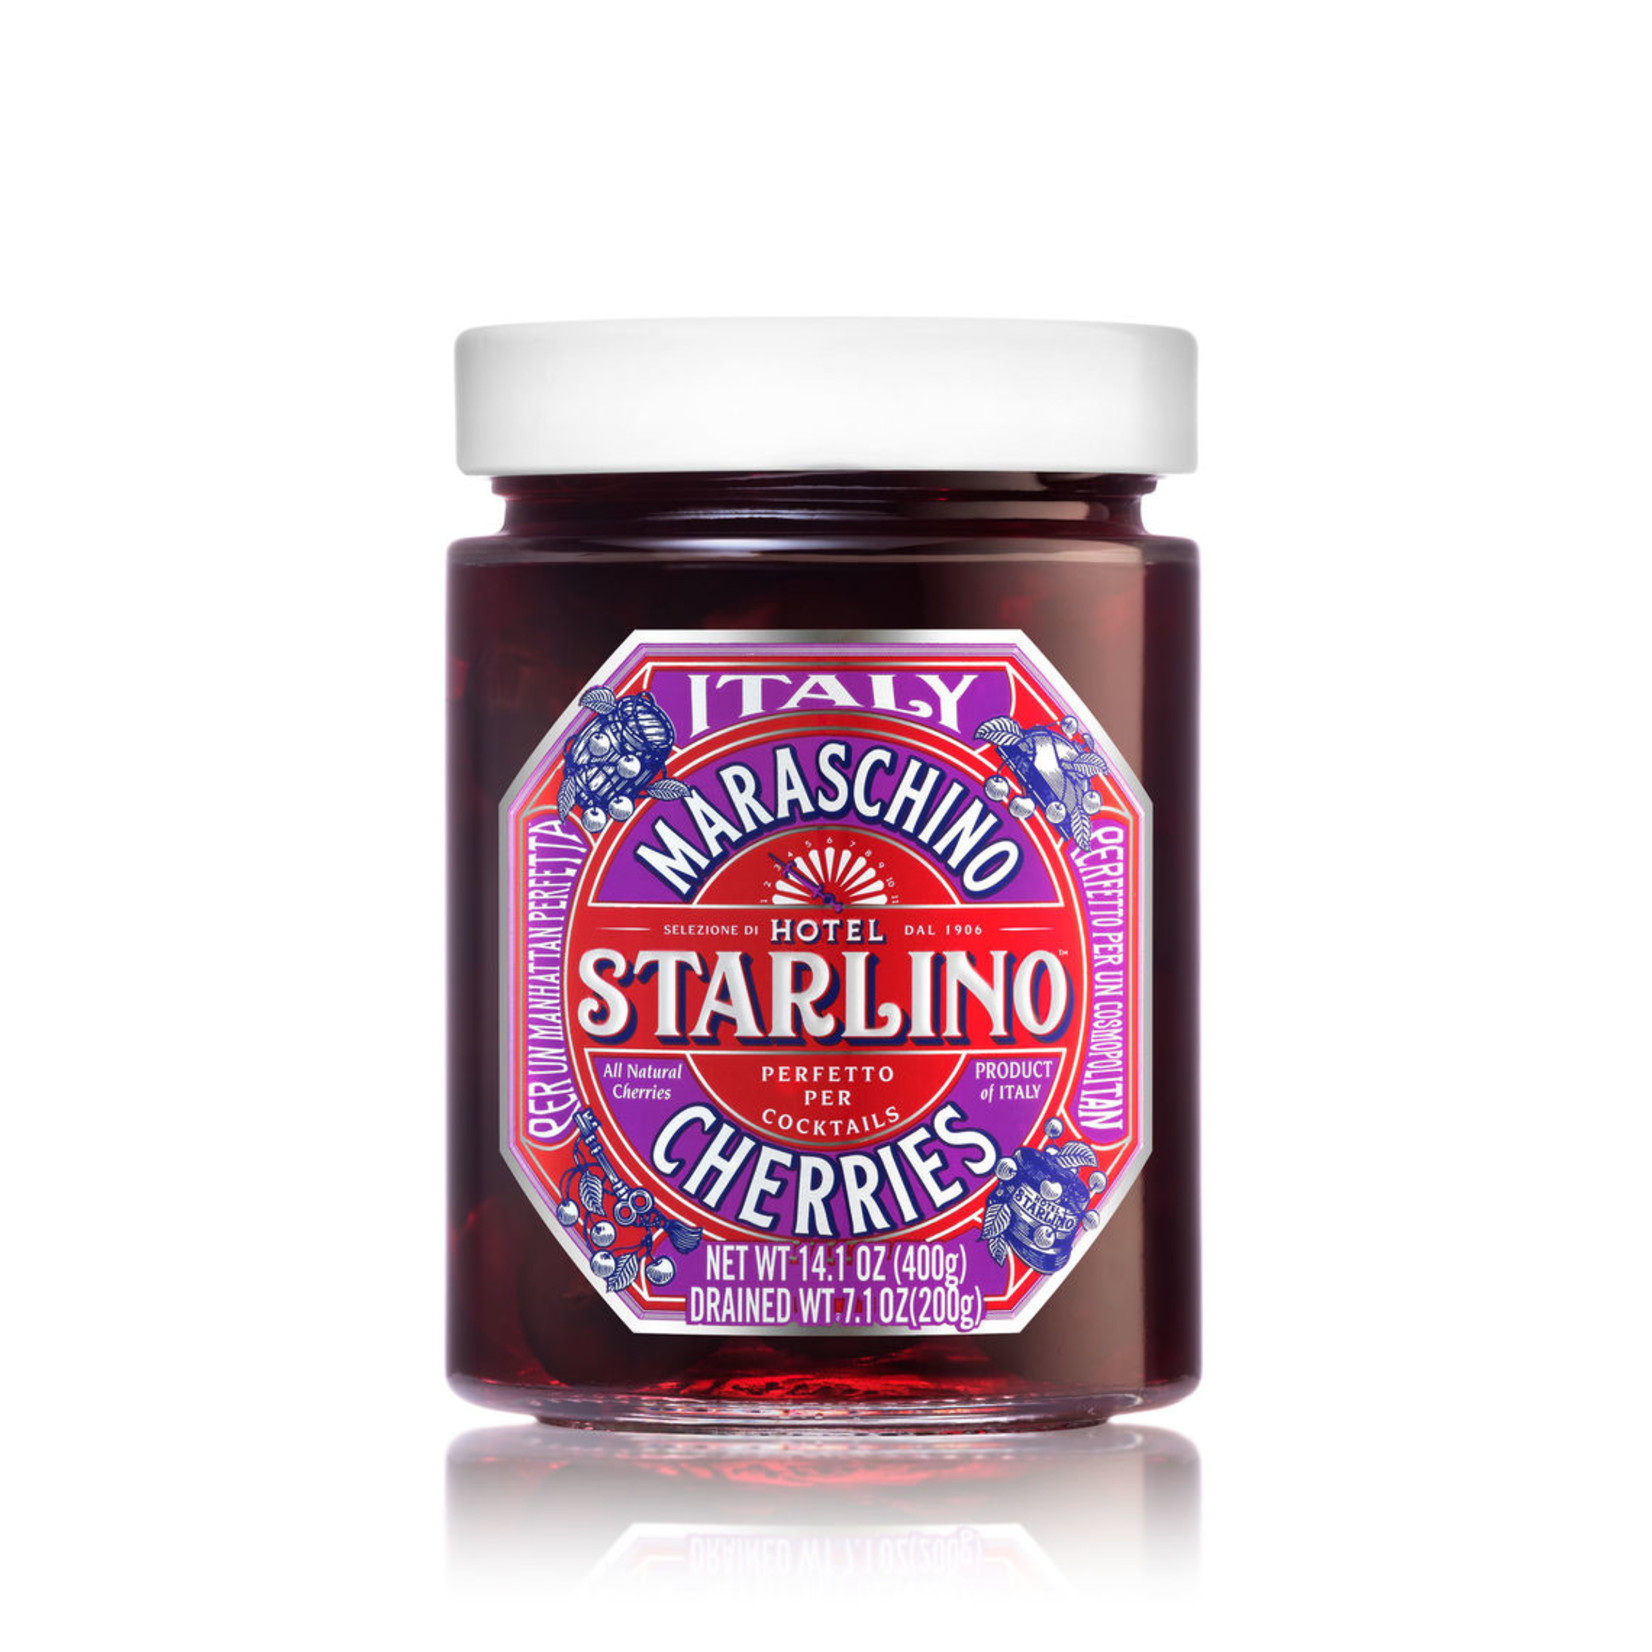 Starlino Maraschino Cherries